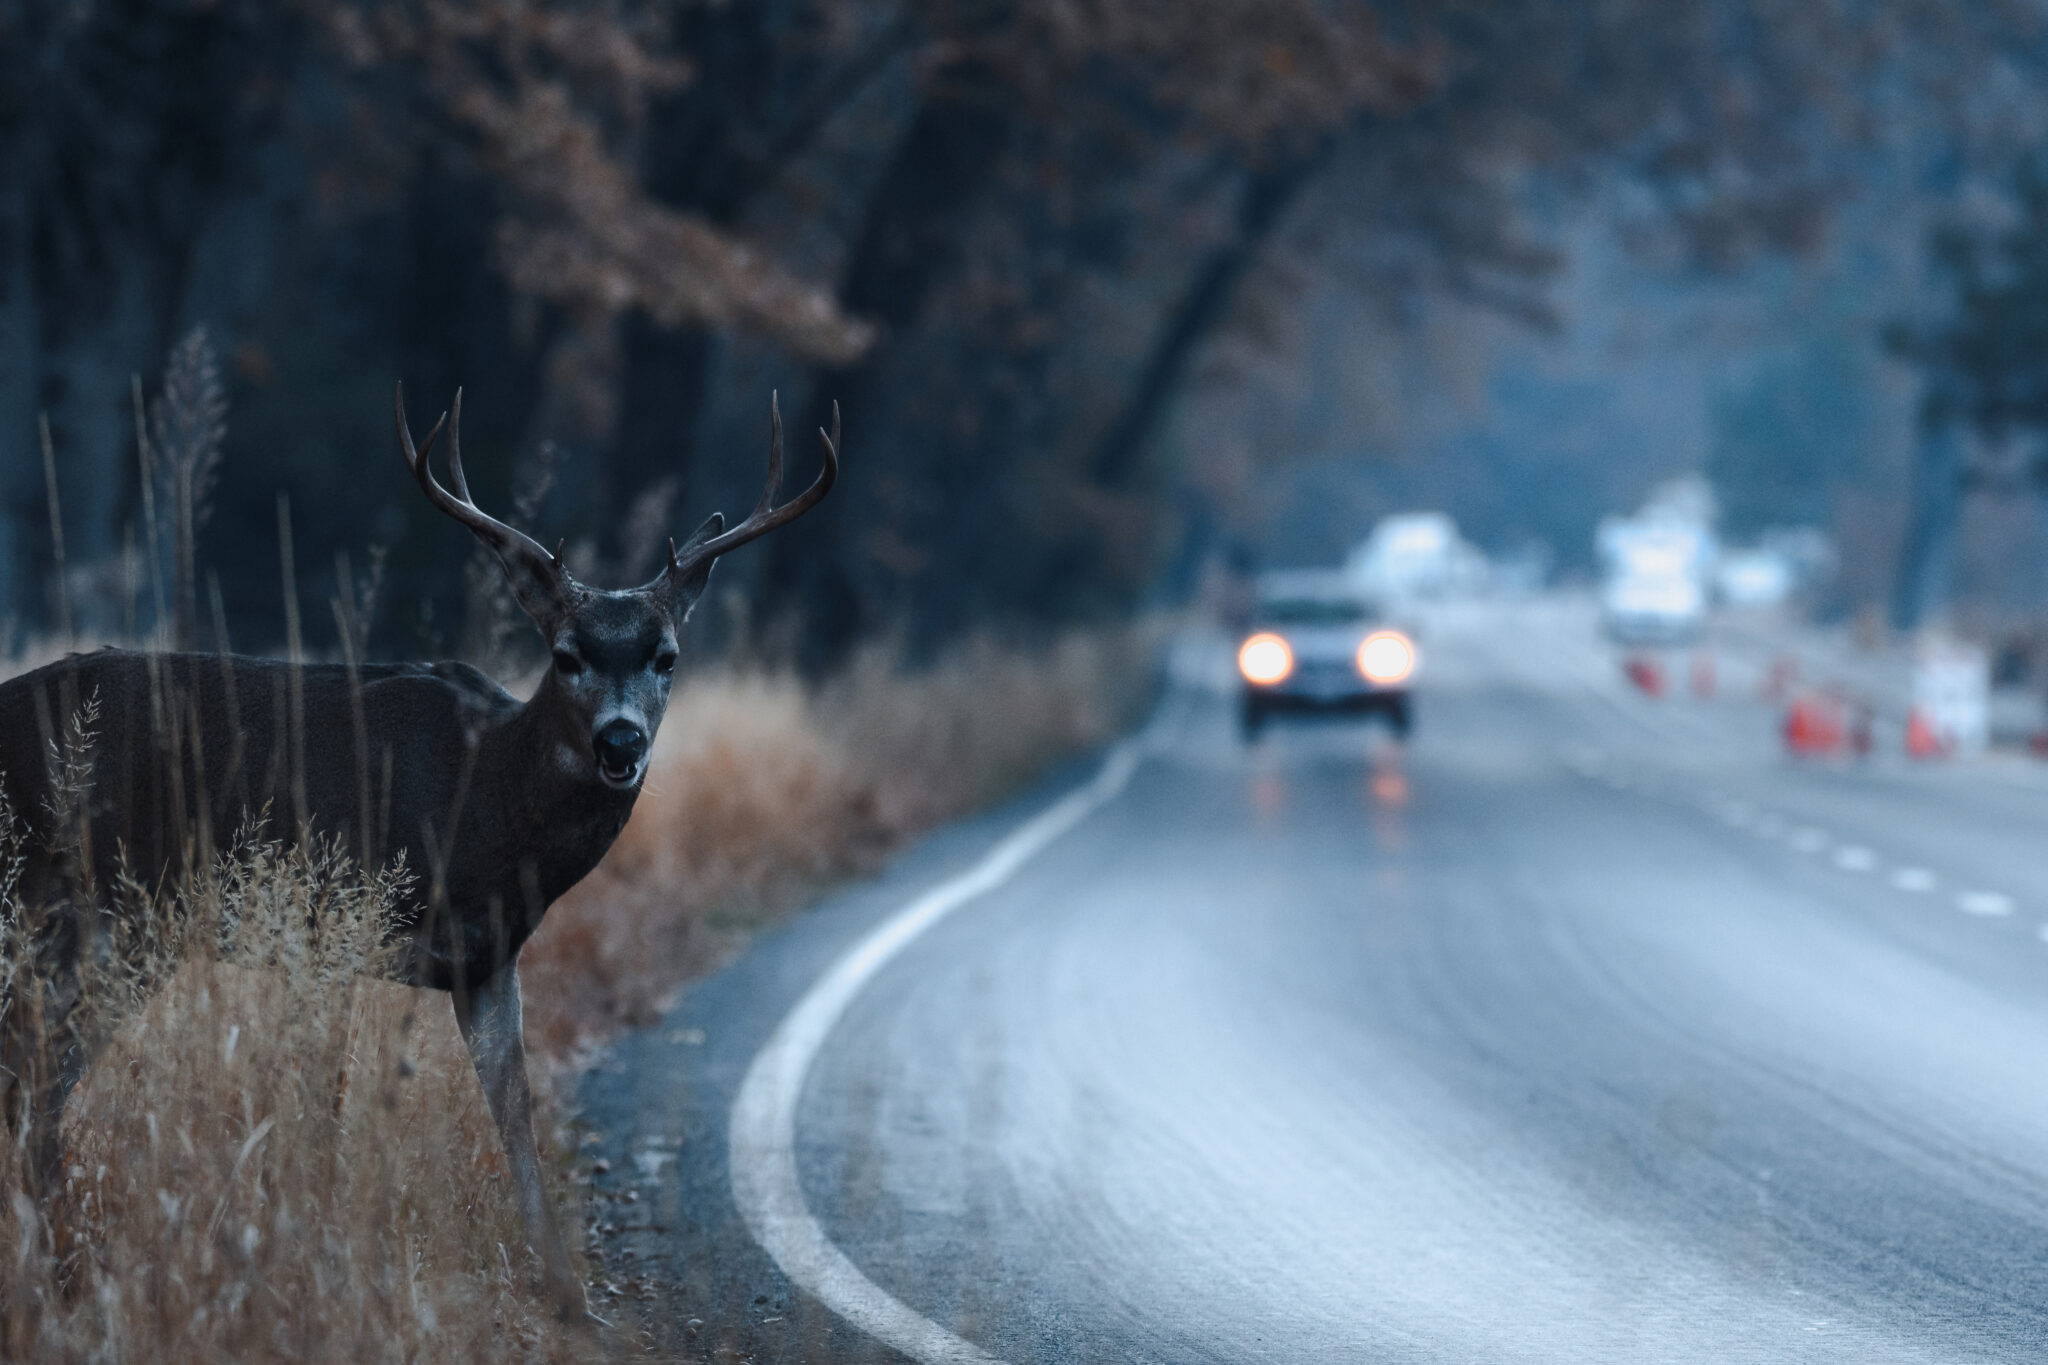 car in danger of hitting deer in road